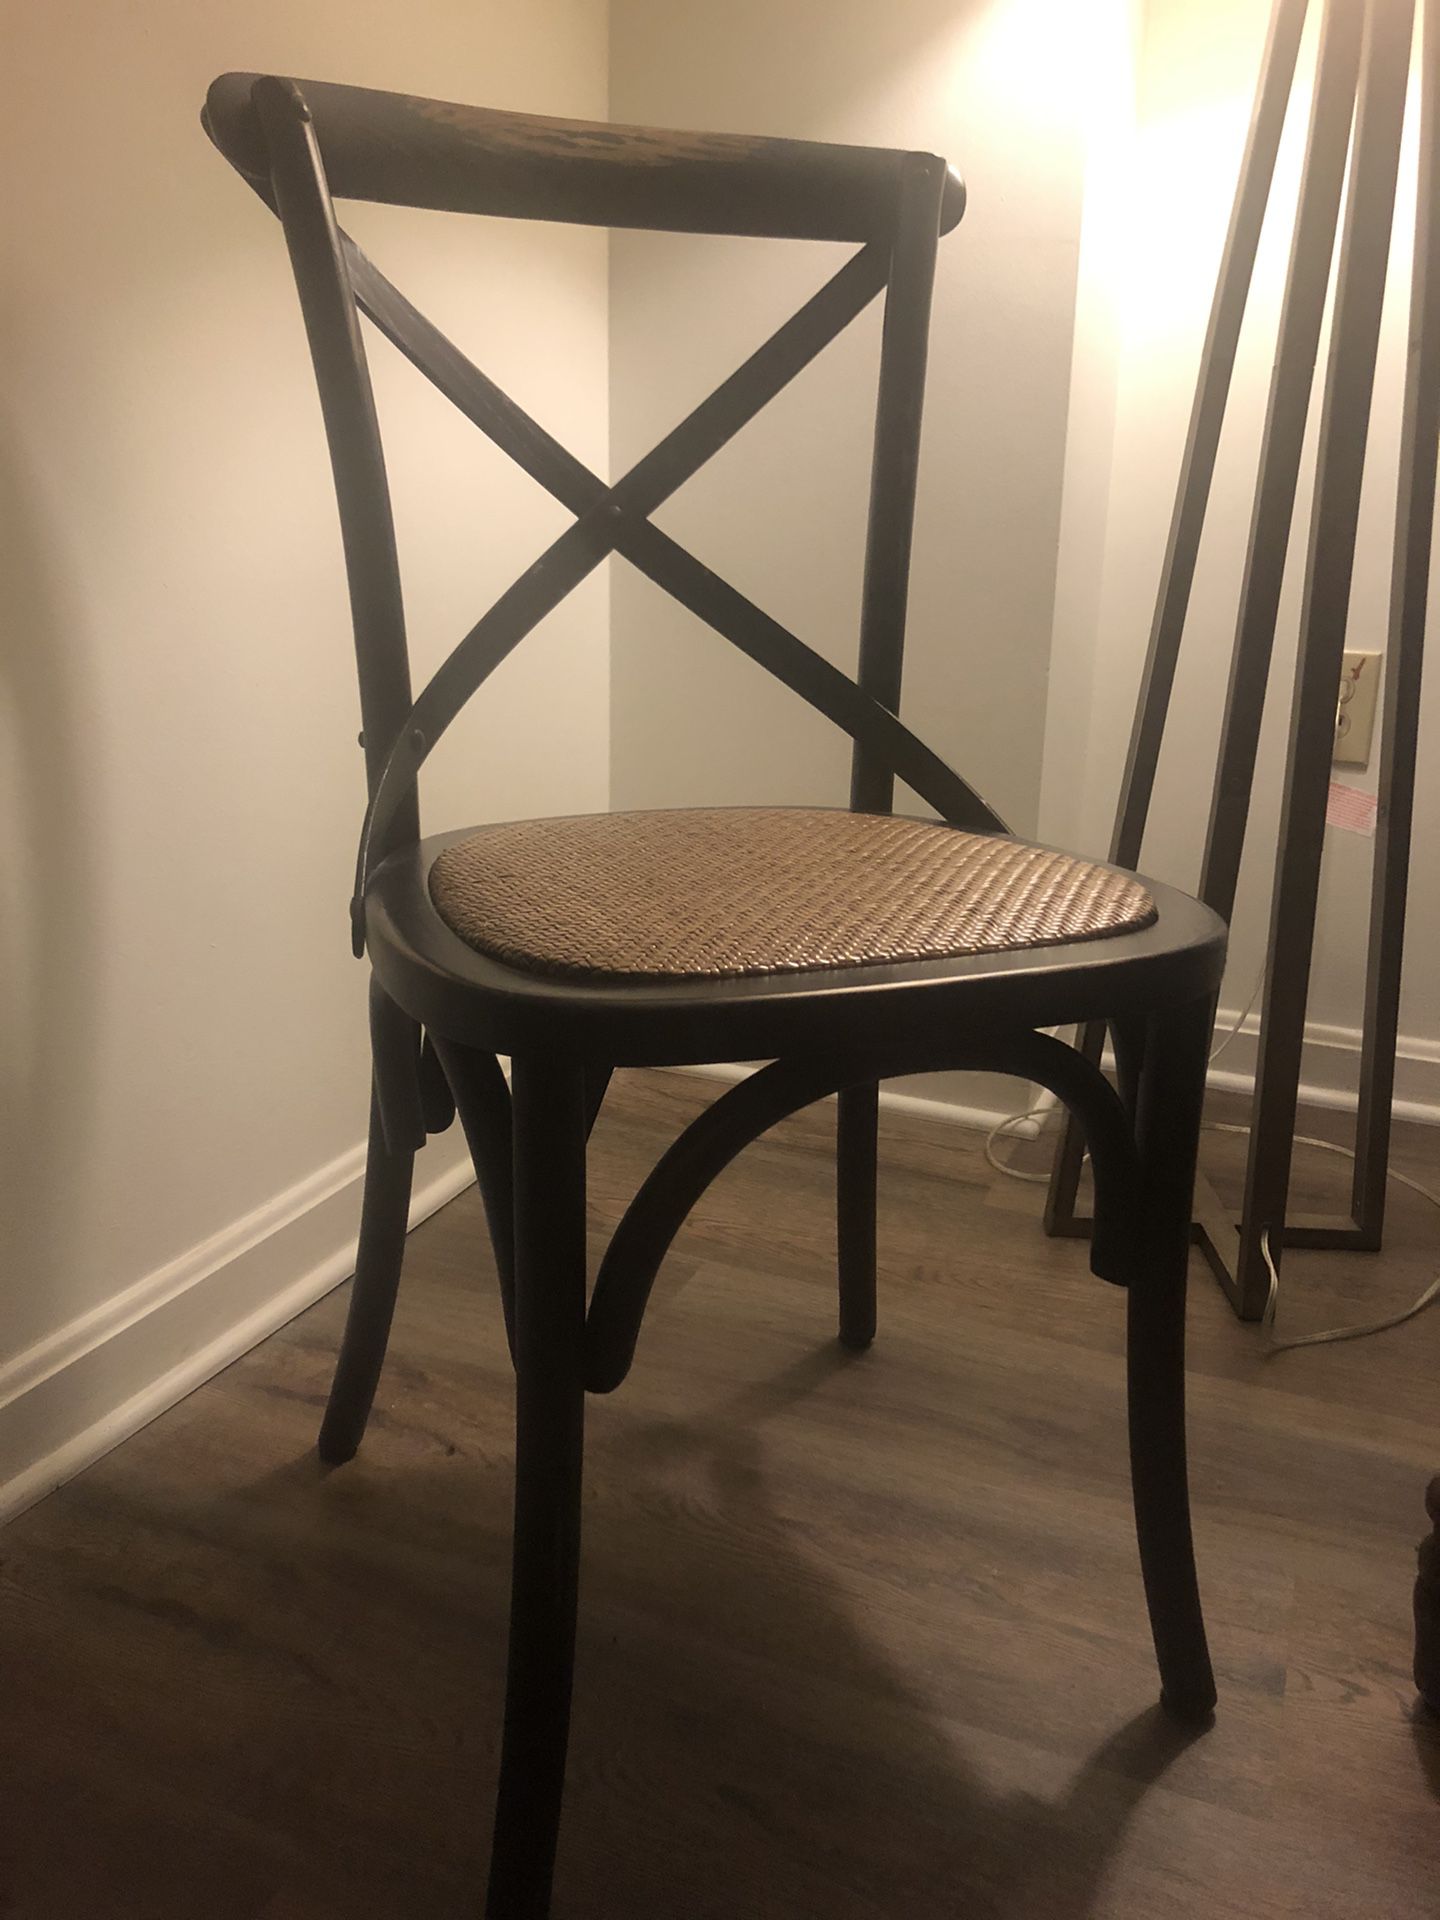 Black kitchen chairs